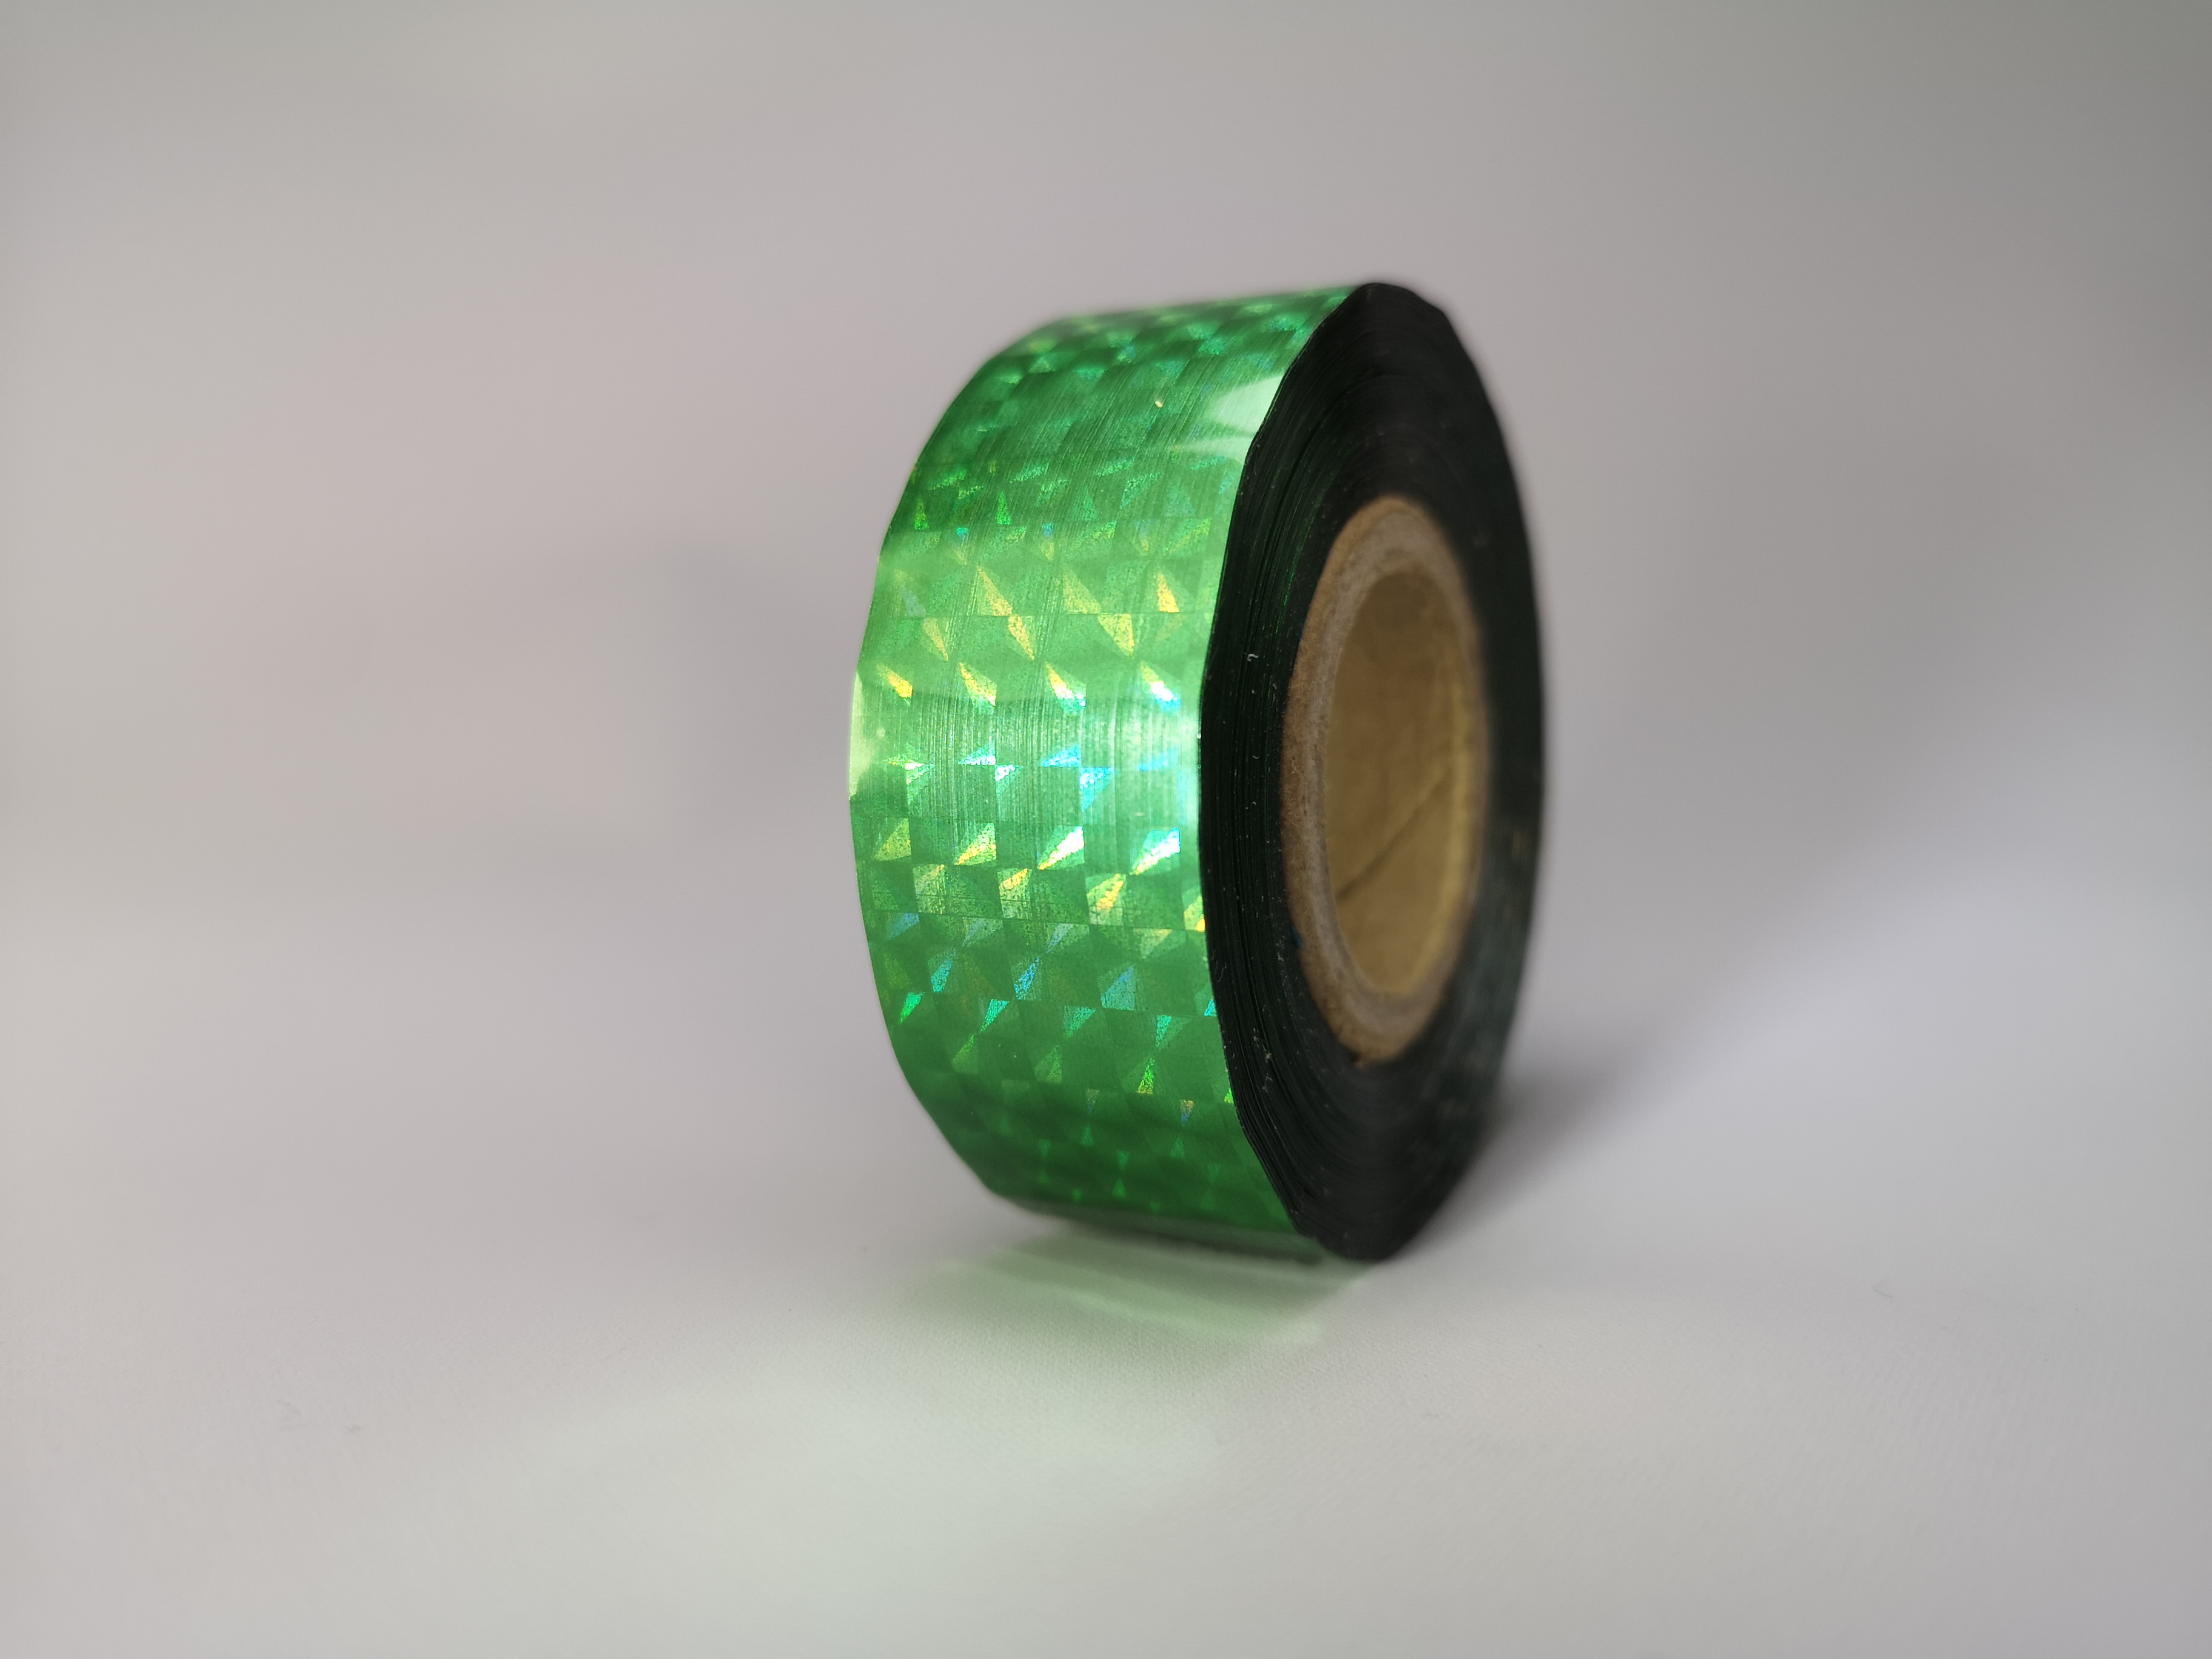 Holografic Prisma Green 25m Deco-Tape